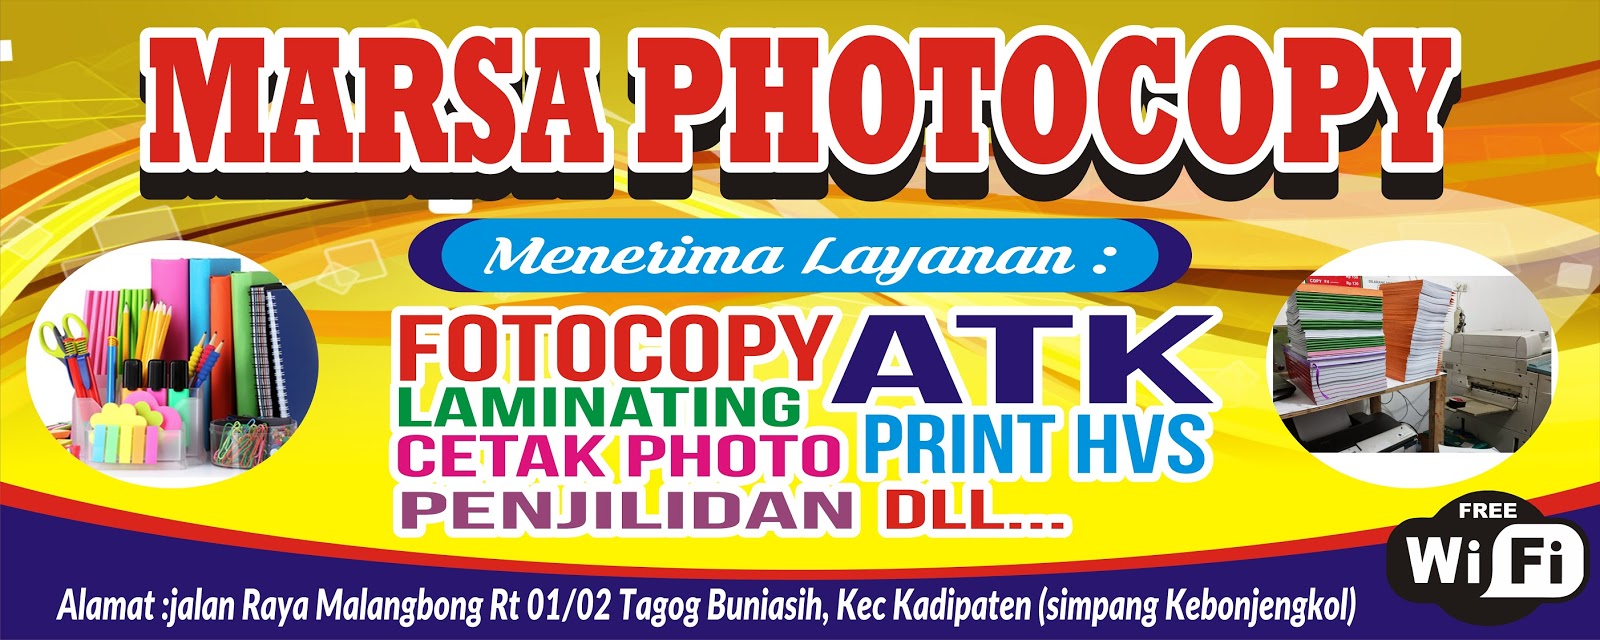 Download Contoh Spanduk Fotocopy. cdr - KARYAKU